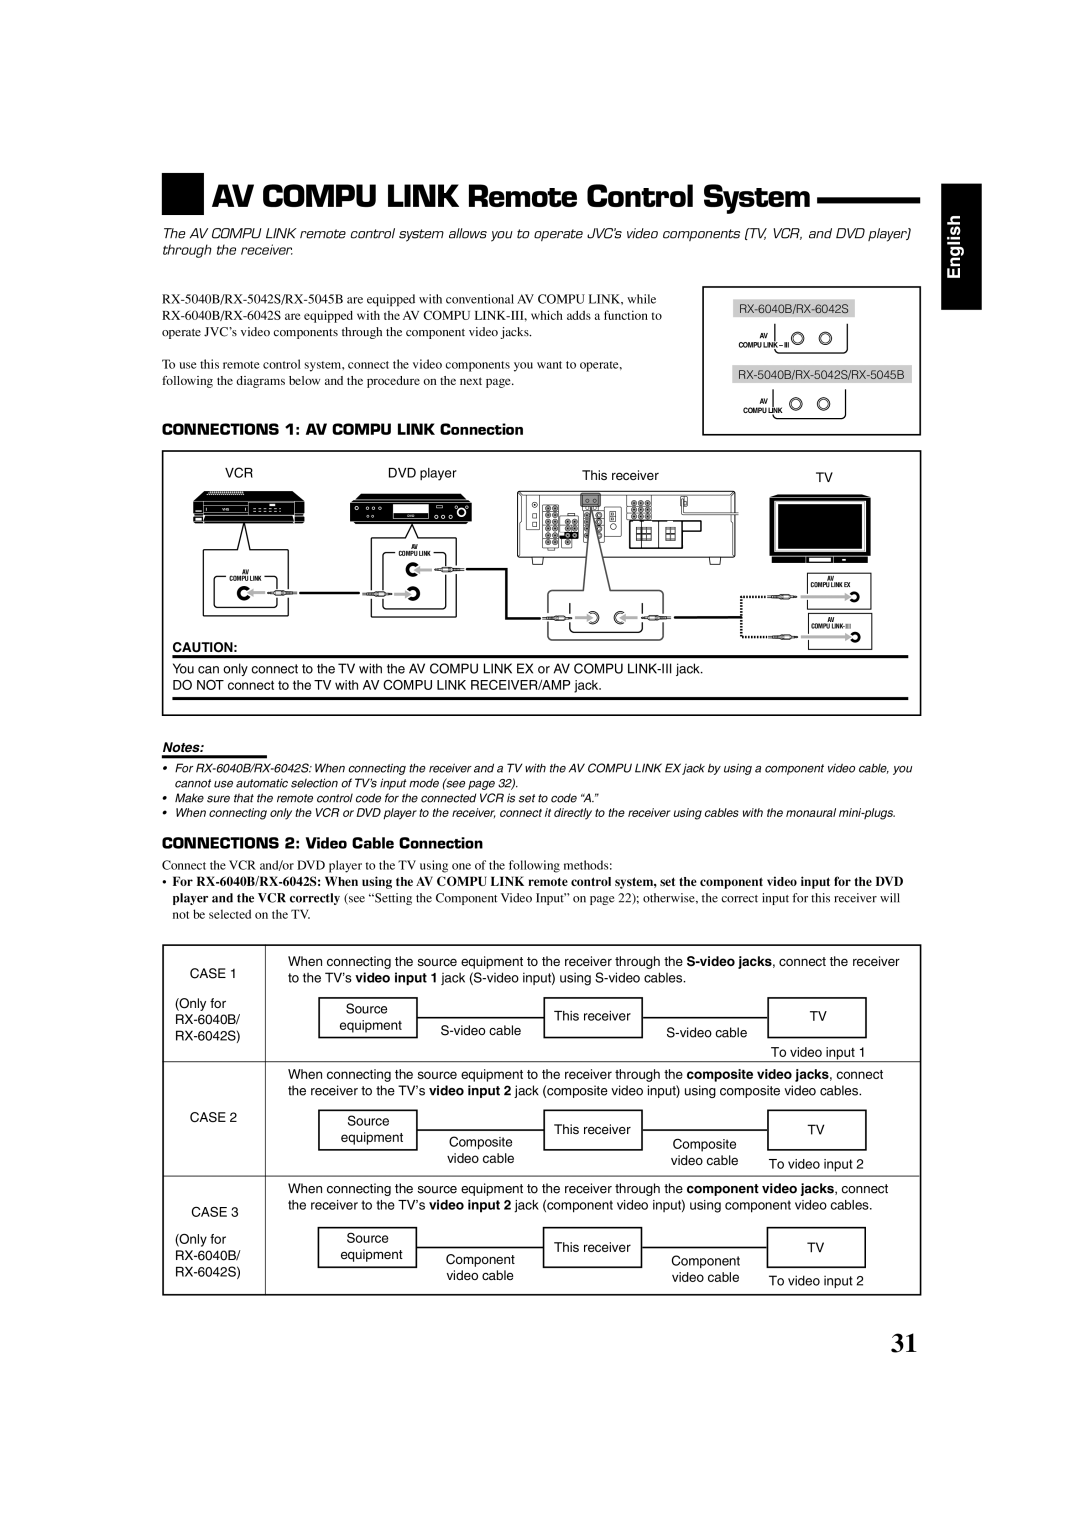 JVC manual AV COMPU LINK Remote Control System, English, RX-6040B/RX-6042S, RX-5040B/RX-5042S/RX-5045B, This receiver 